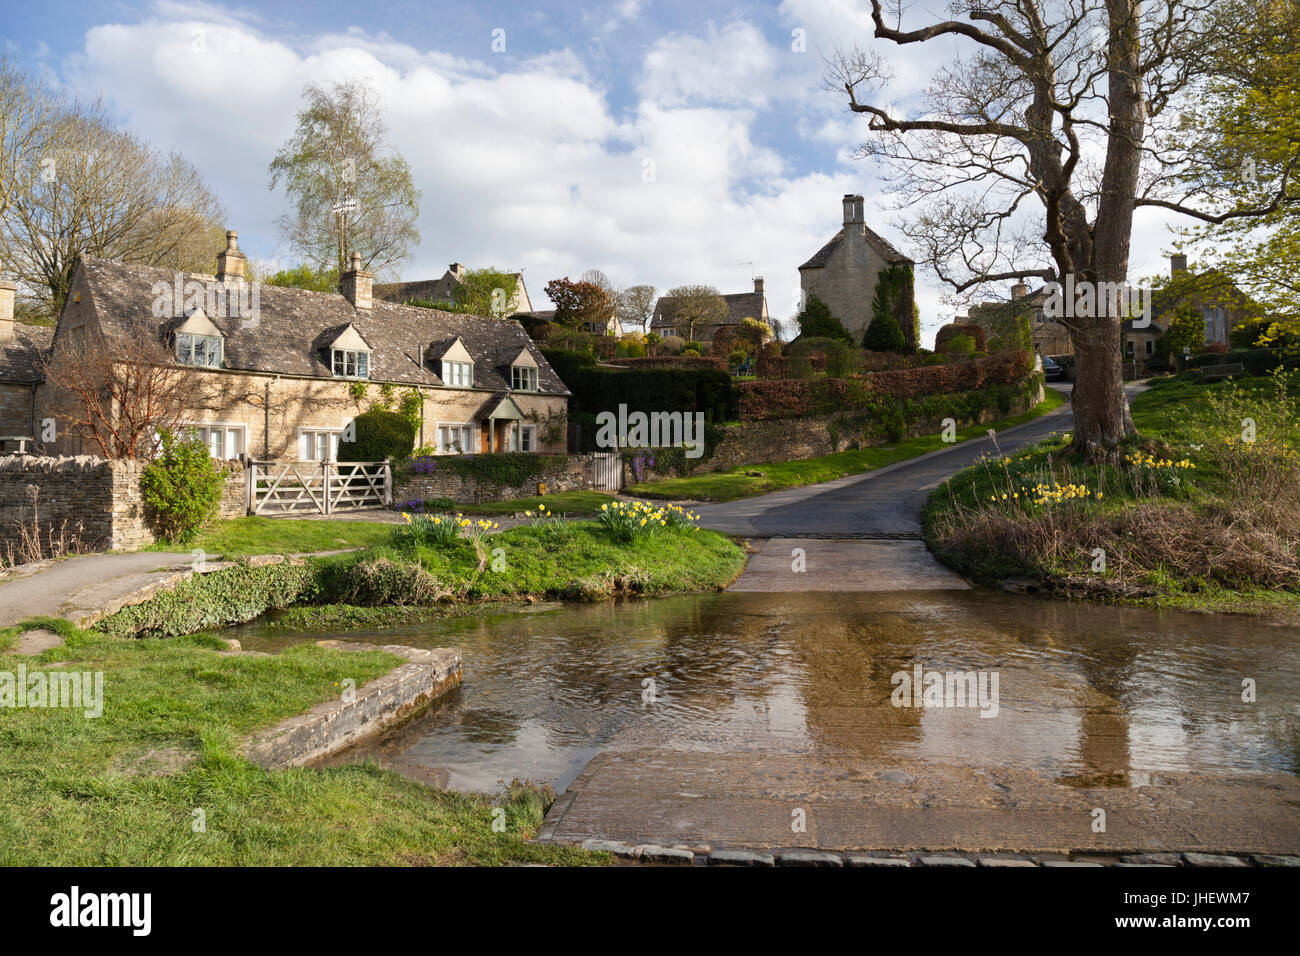 Cotswold village de Upper Slaughter et la rivière Eye, Upper Slaughter, Cotswolds, Gloucestershire, Angleterre, Royaume-Uni, Europe Banque D'Images